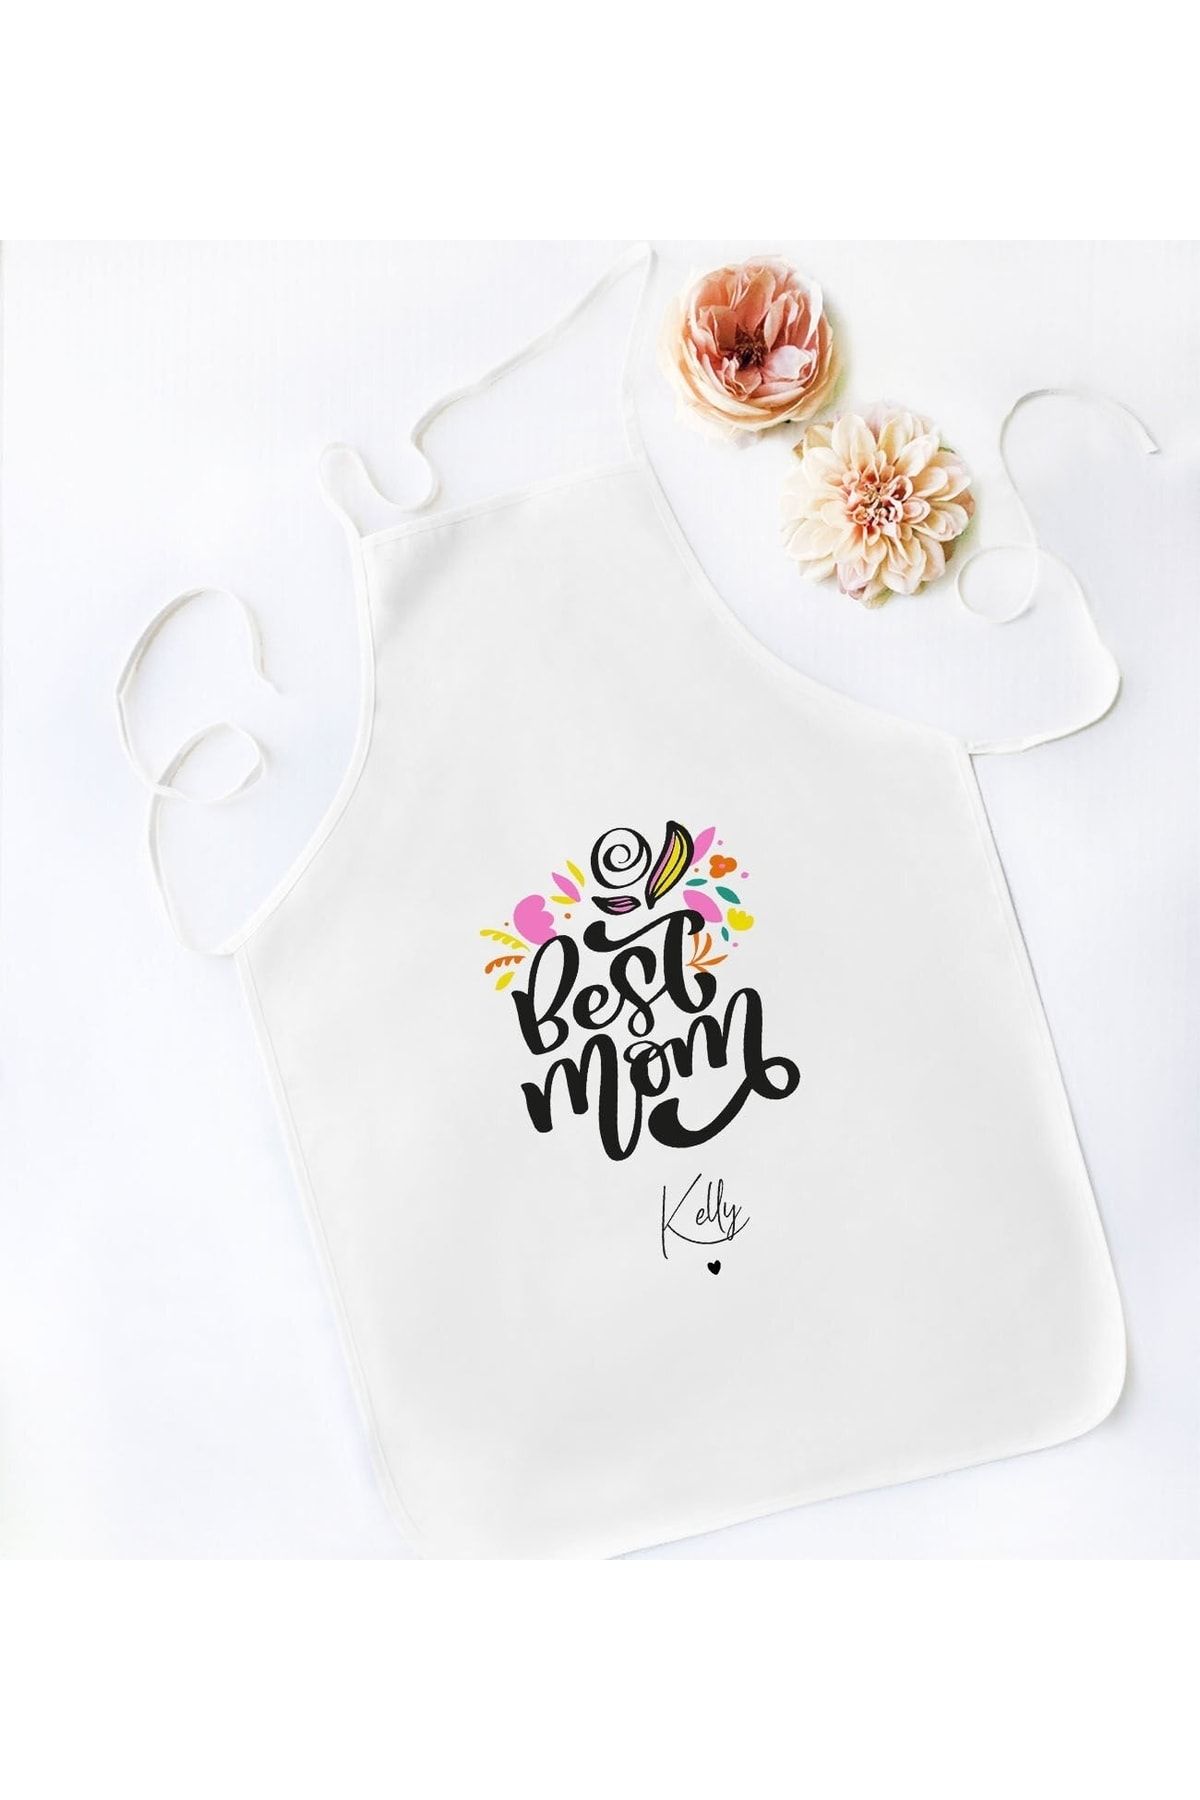 Bk Gift Kişiye Özel Isimli Anneler Günü Tasarımlı Beyaz Mutfak Önlüğü, Aşçı Önlüğü, Şef Önlüğü, Anne